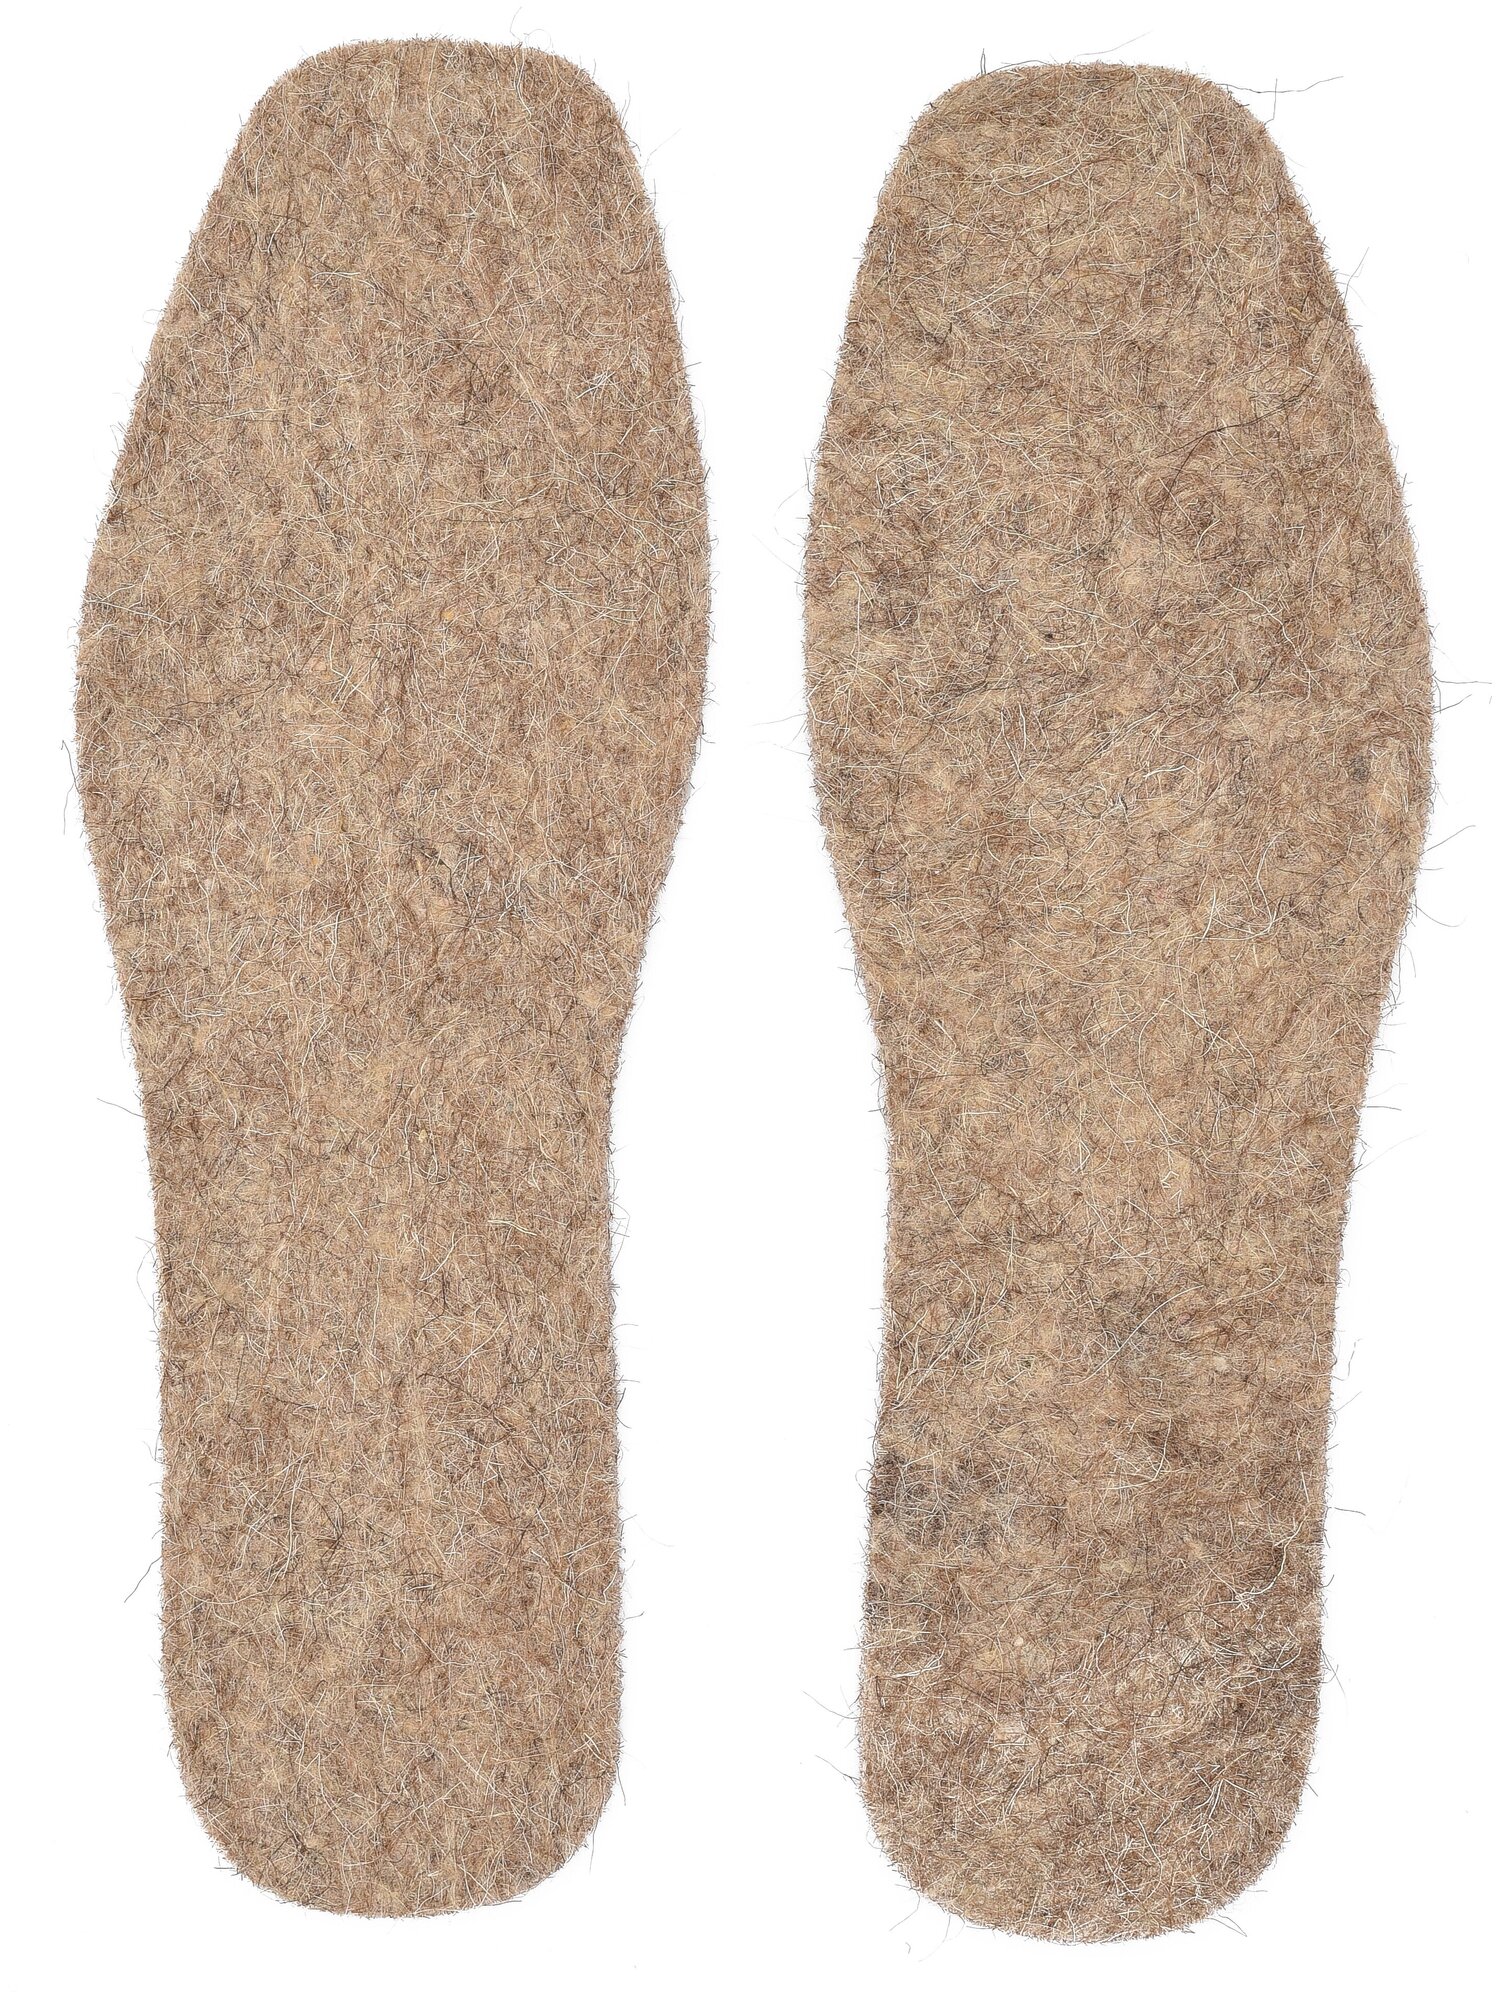 Стельки войлочные толстые для обуви, теплые, зимние (2 пары 49-го размера) - фотография № 2